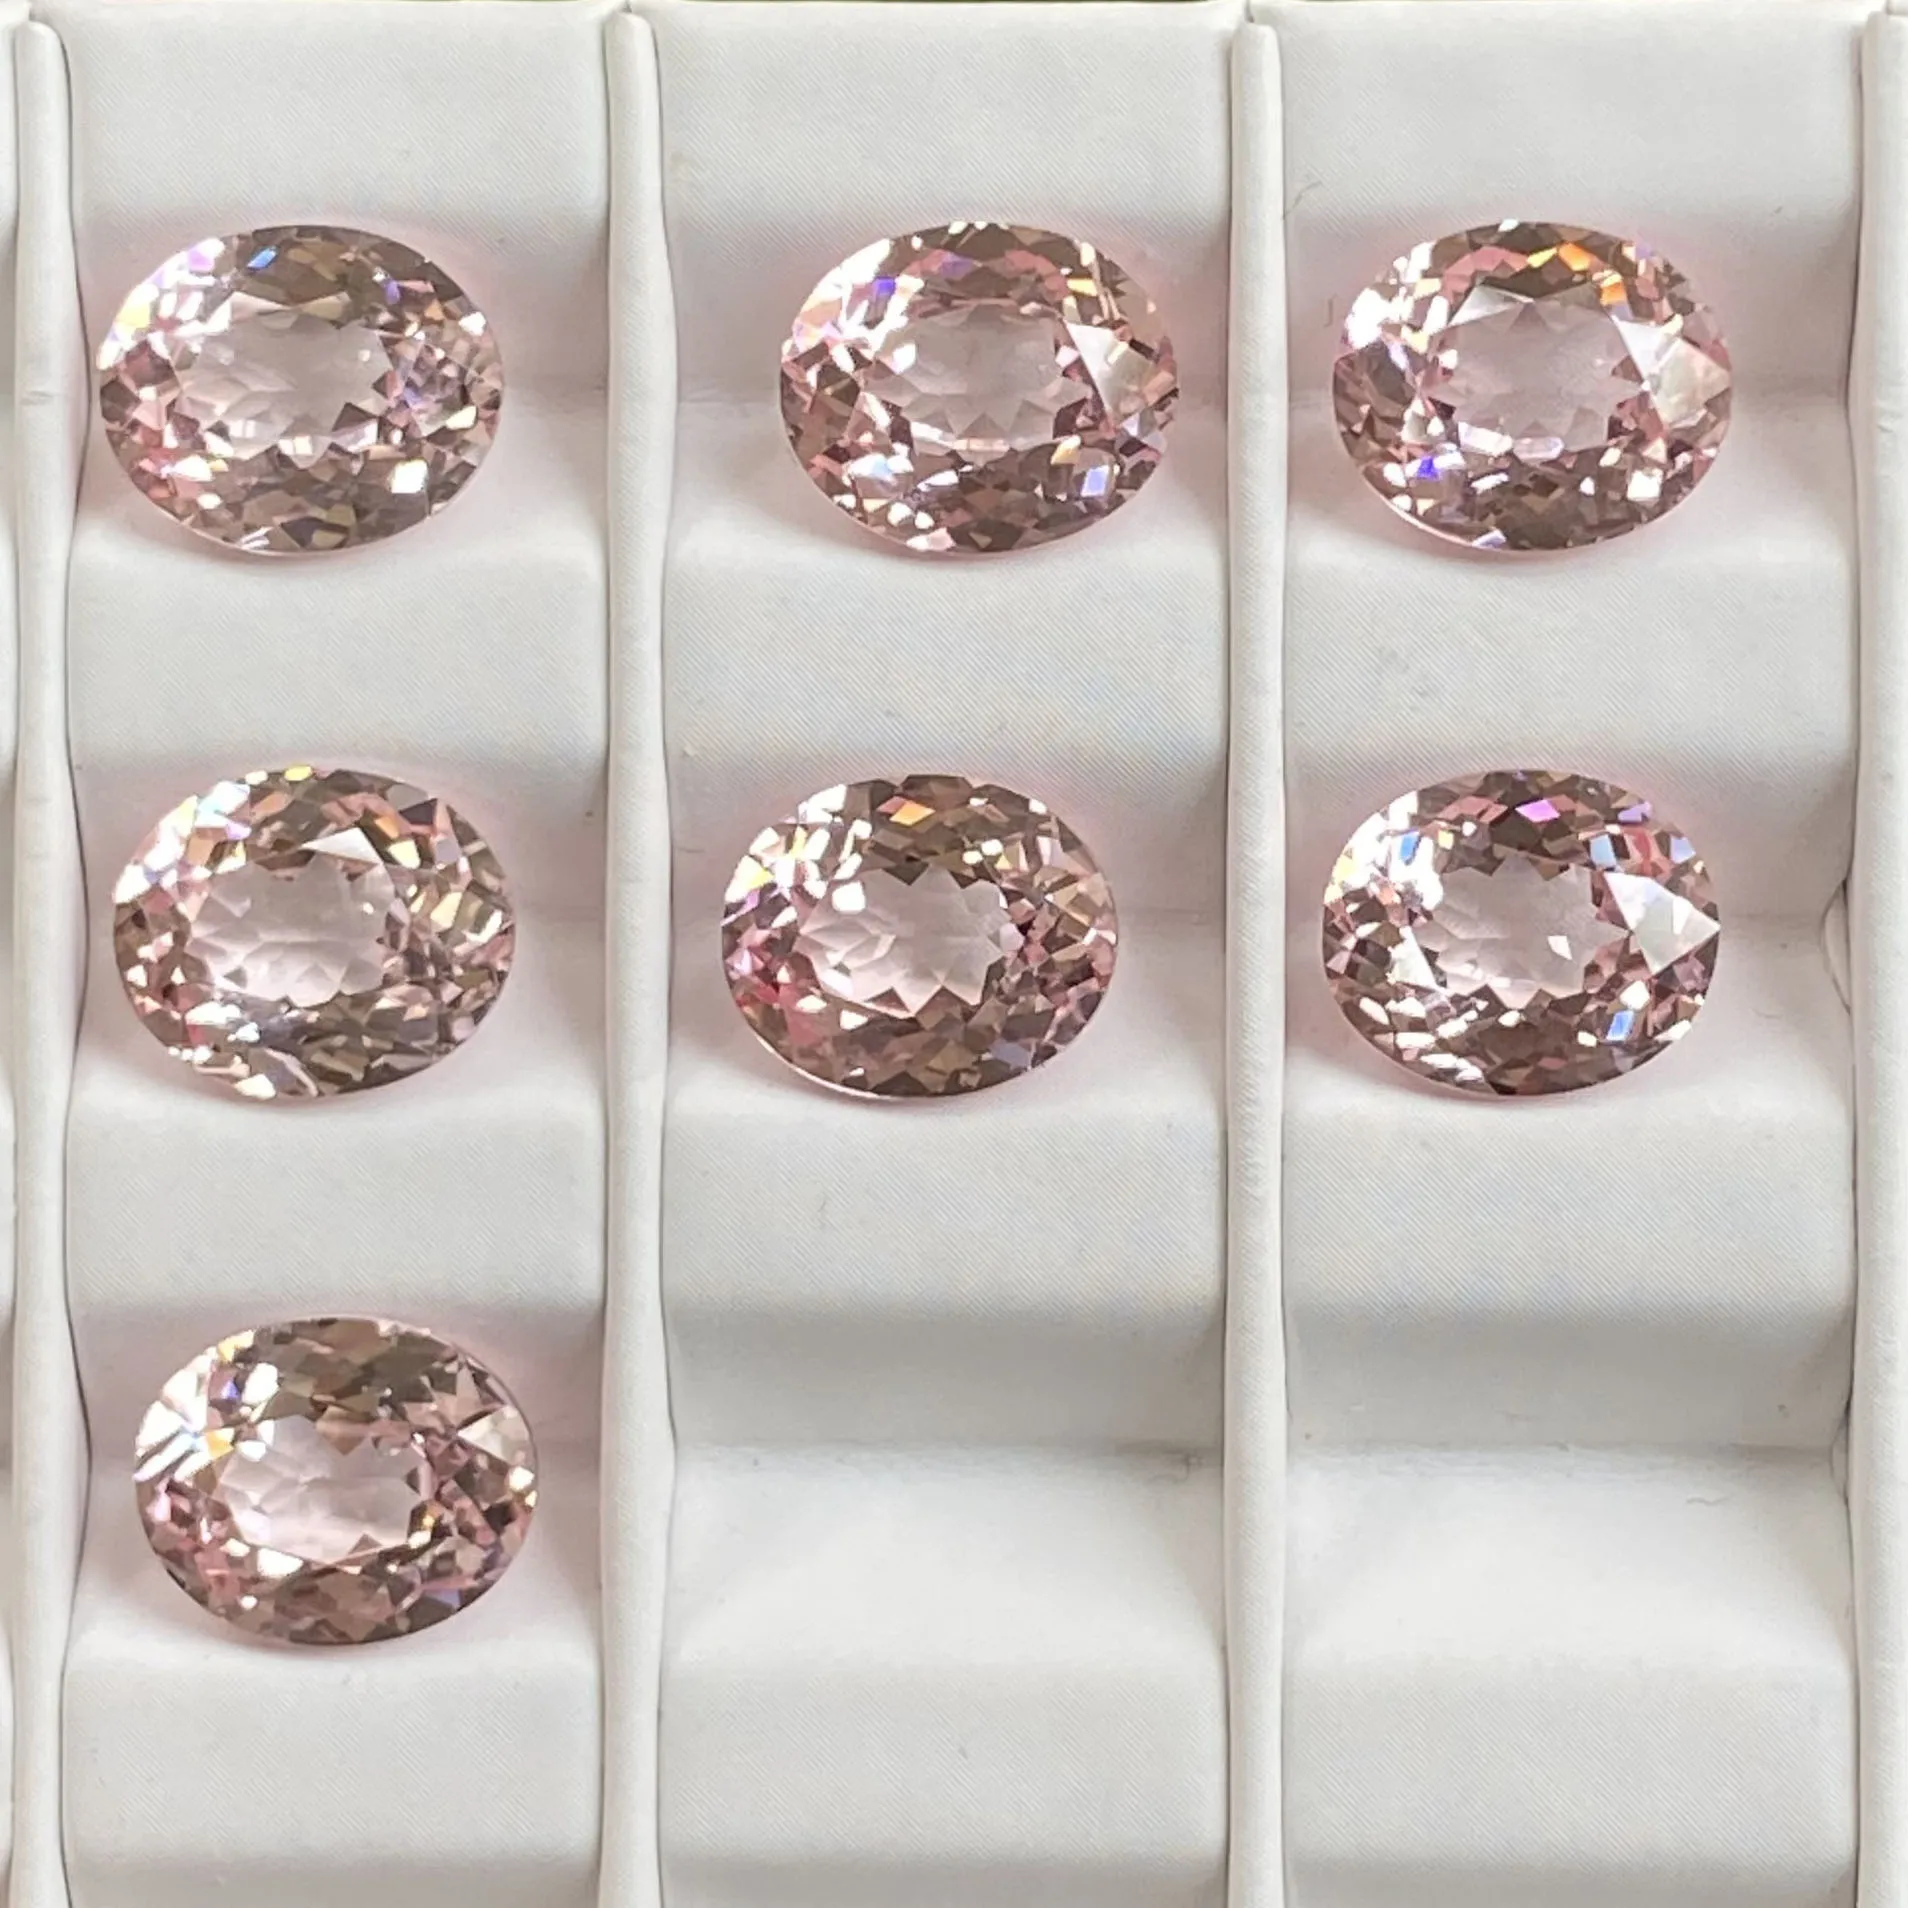 

Ruihe, розовый цвет, лабораторные драгоценные камни овальной формы, Свободный Камень для изготовления ювелирных изделий своими руками